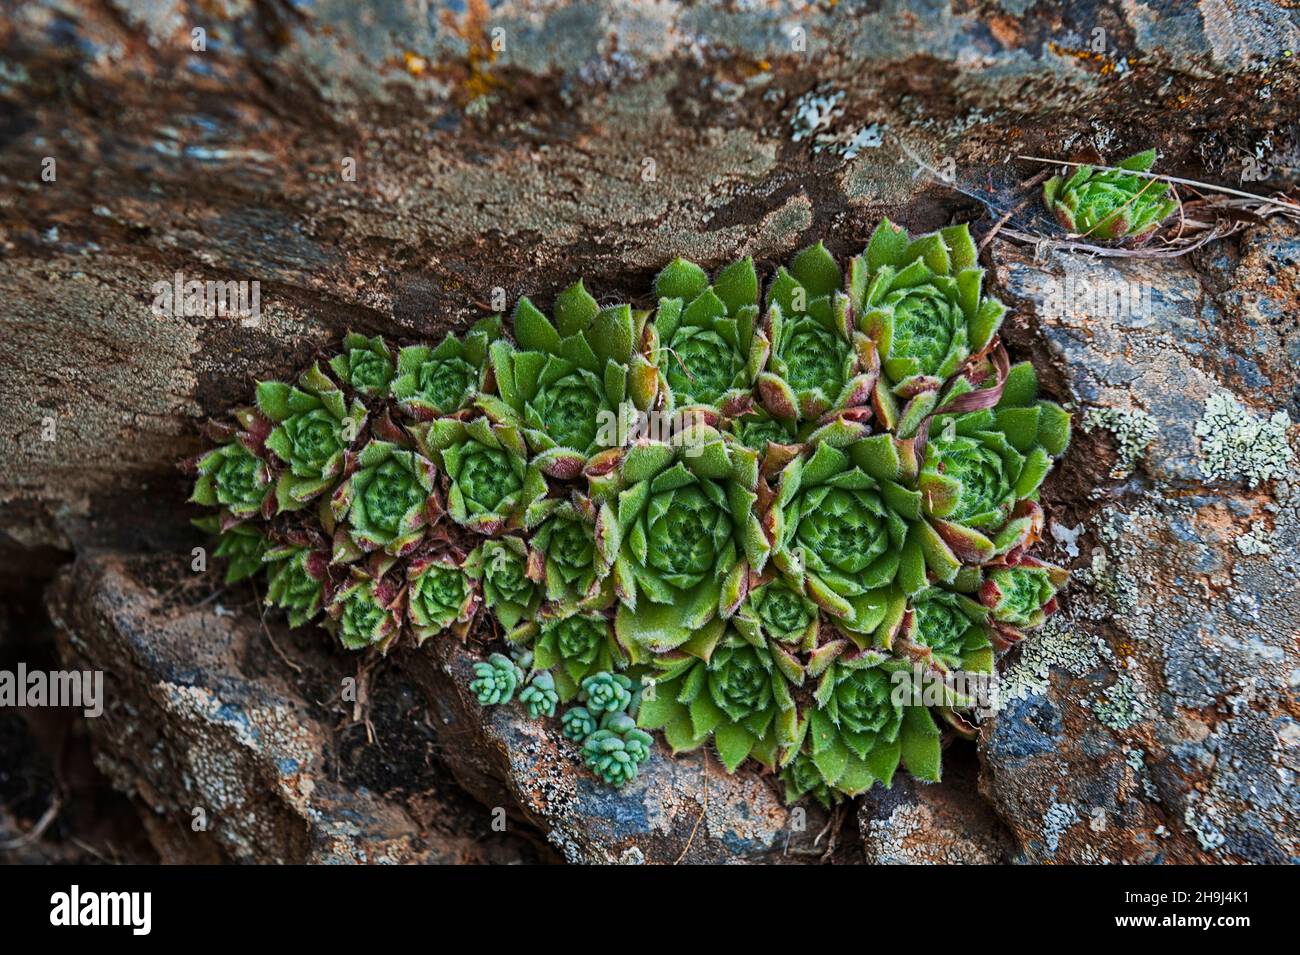 Sempervivum, die immergrüne, ausdauernde Sukulente oder Sukulente in der Familie der Crassulaceae. Stockfoto